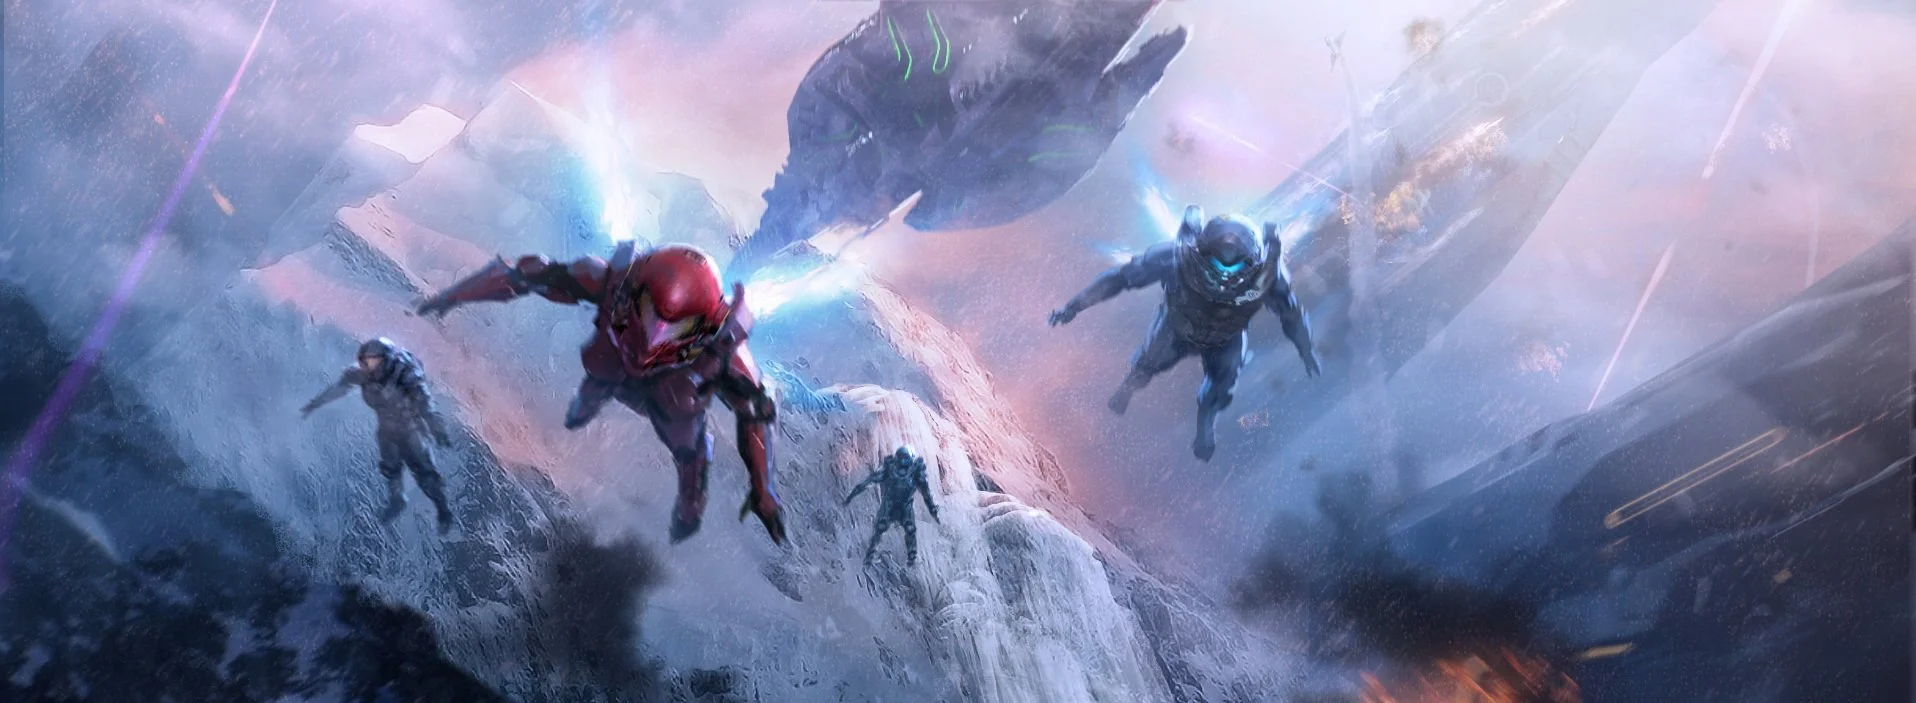 Рецензия на Halo 5: Guardians - фото 1